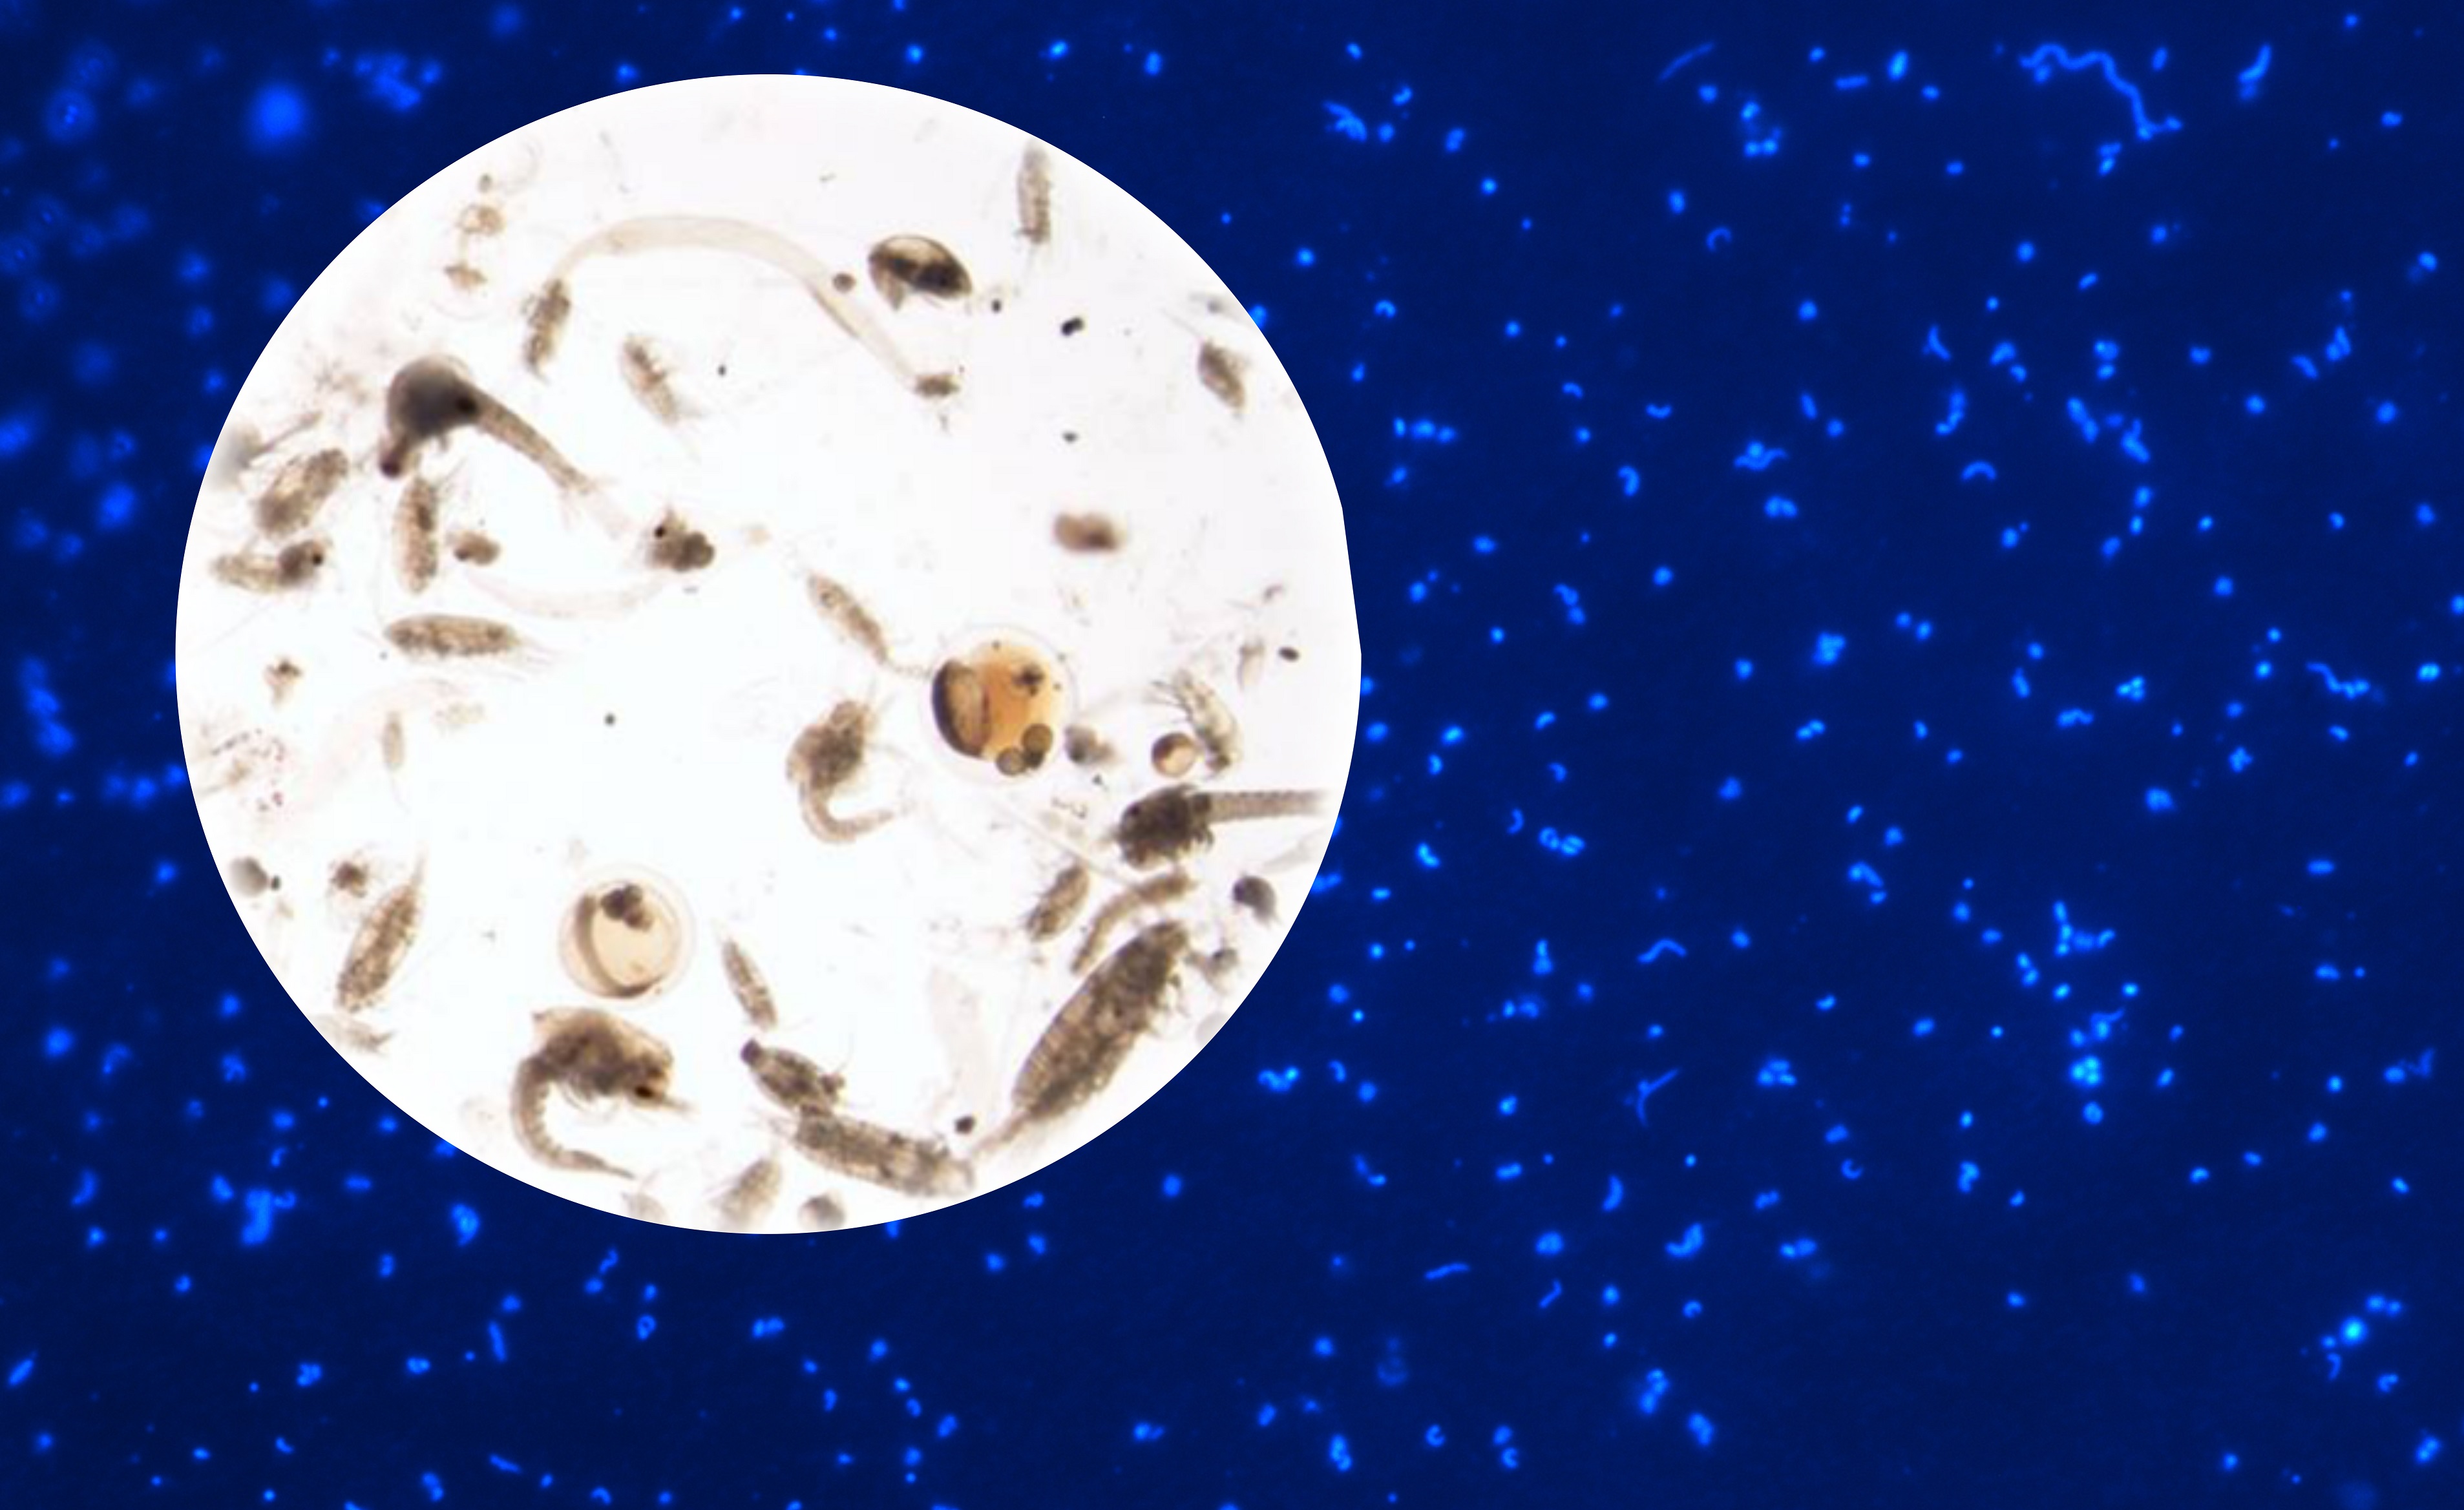 El estudio examina la composición de la materia orgánica derivada del zooplancton y su biodisponibilidad para las bacterias